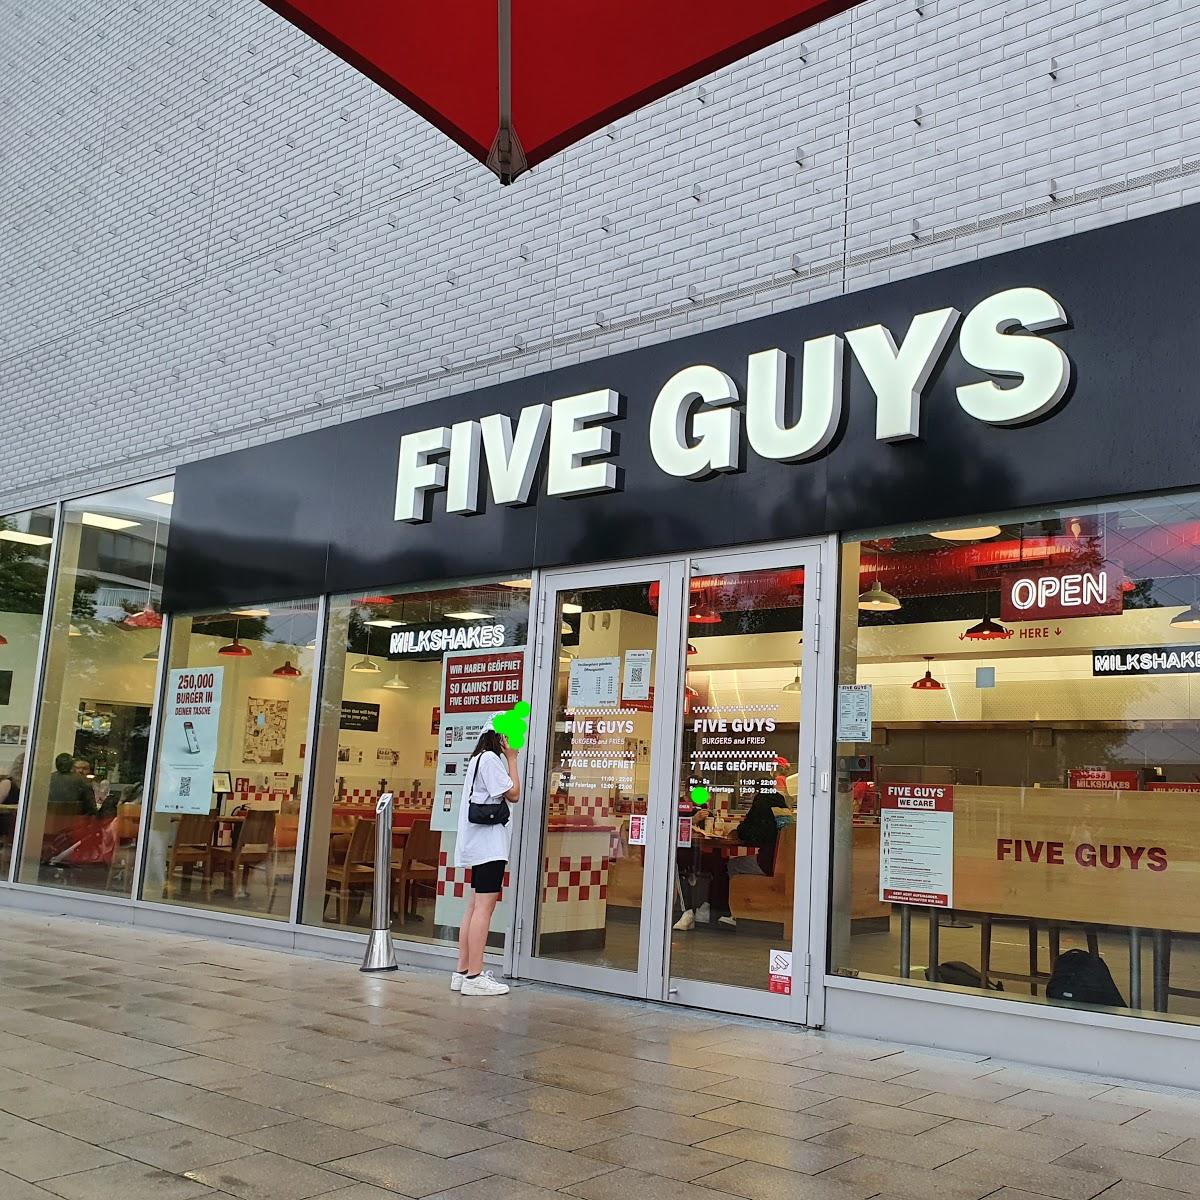 Restaurant "Five Guys" in München